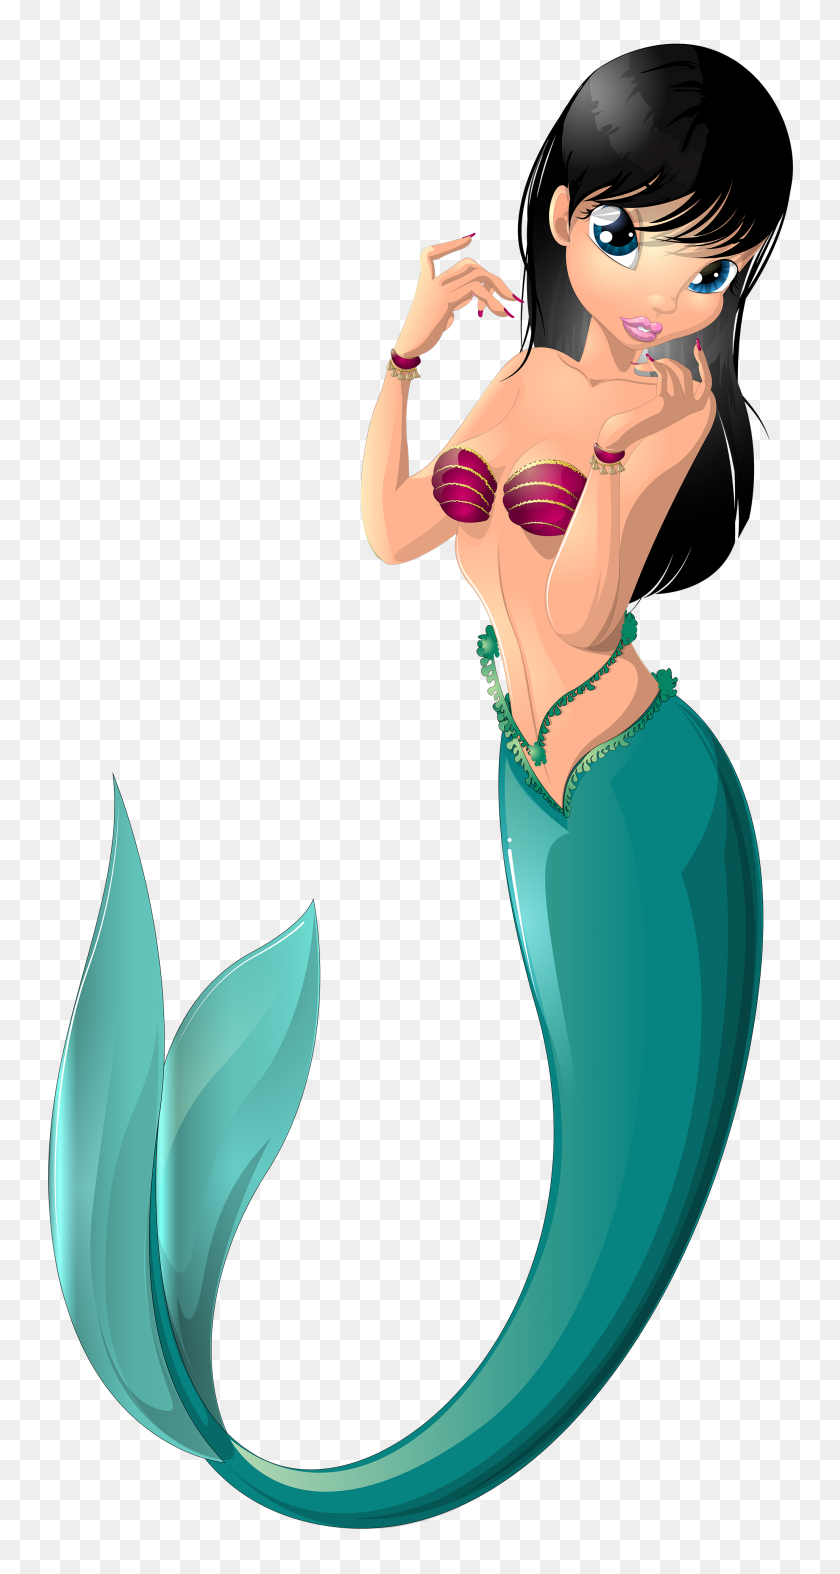 2060x4000 Mermaid Clip Art Image Mermaid Mermaid Images - Mermaid Clip Art